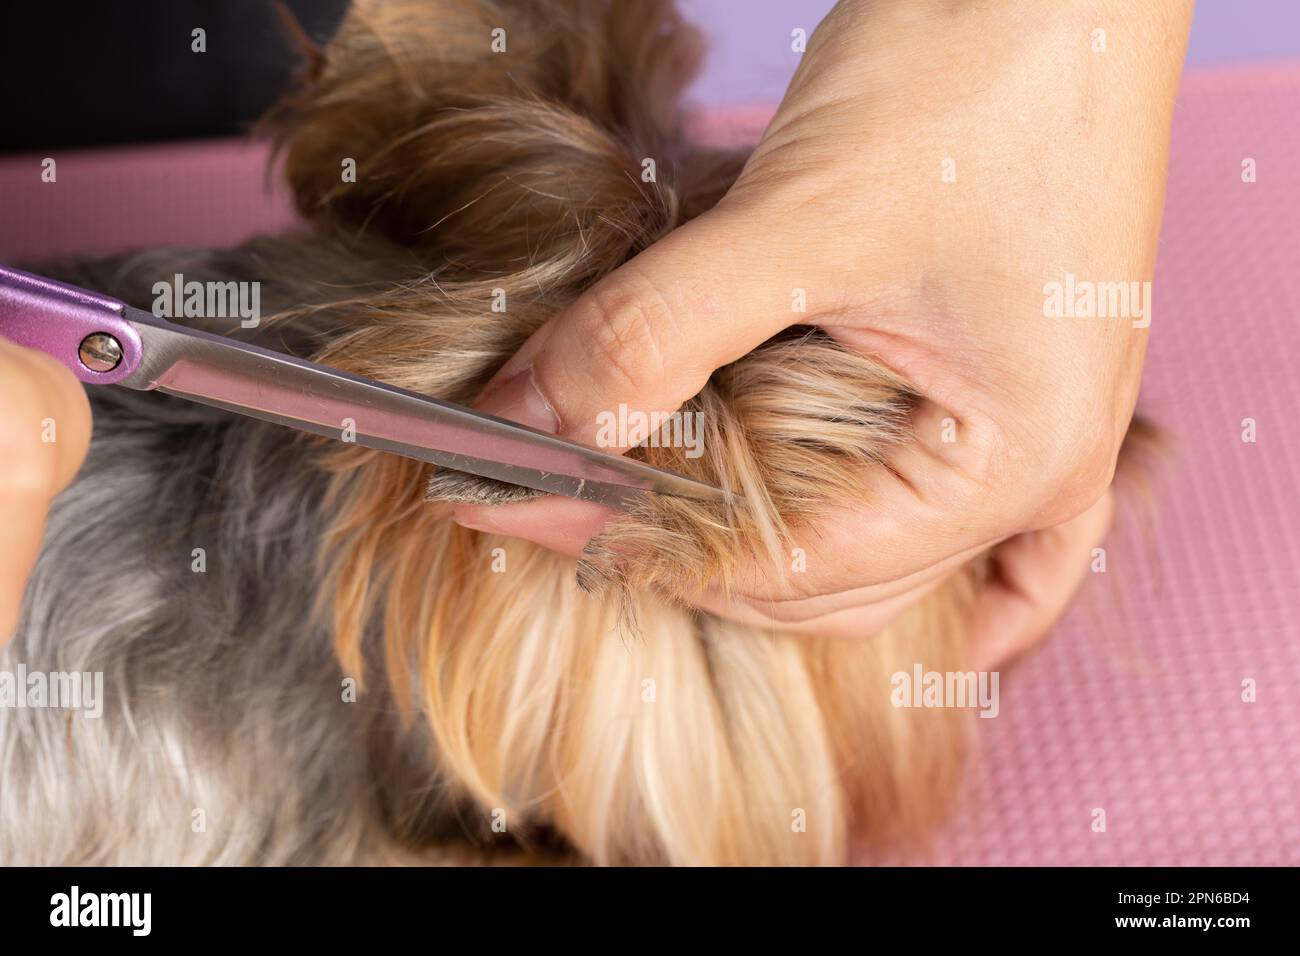 Gros plan de ciseaux métalliques et de fourrure de chien sur la tête. Le vétérinaire coupe l'excédent de cheveux de l'animal. Concept de soins et de toilettage pour chiens Banque D'Images